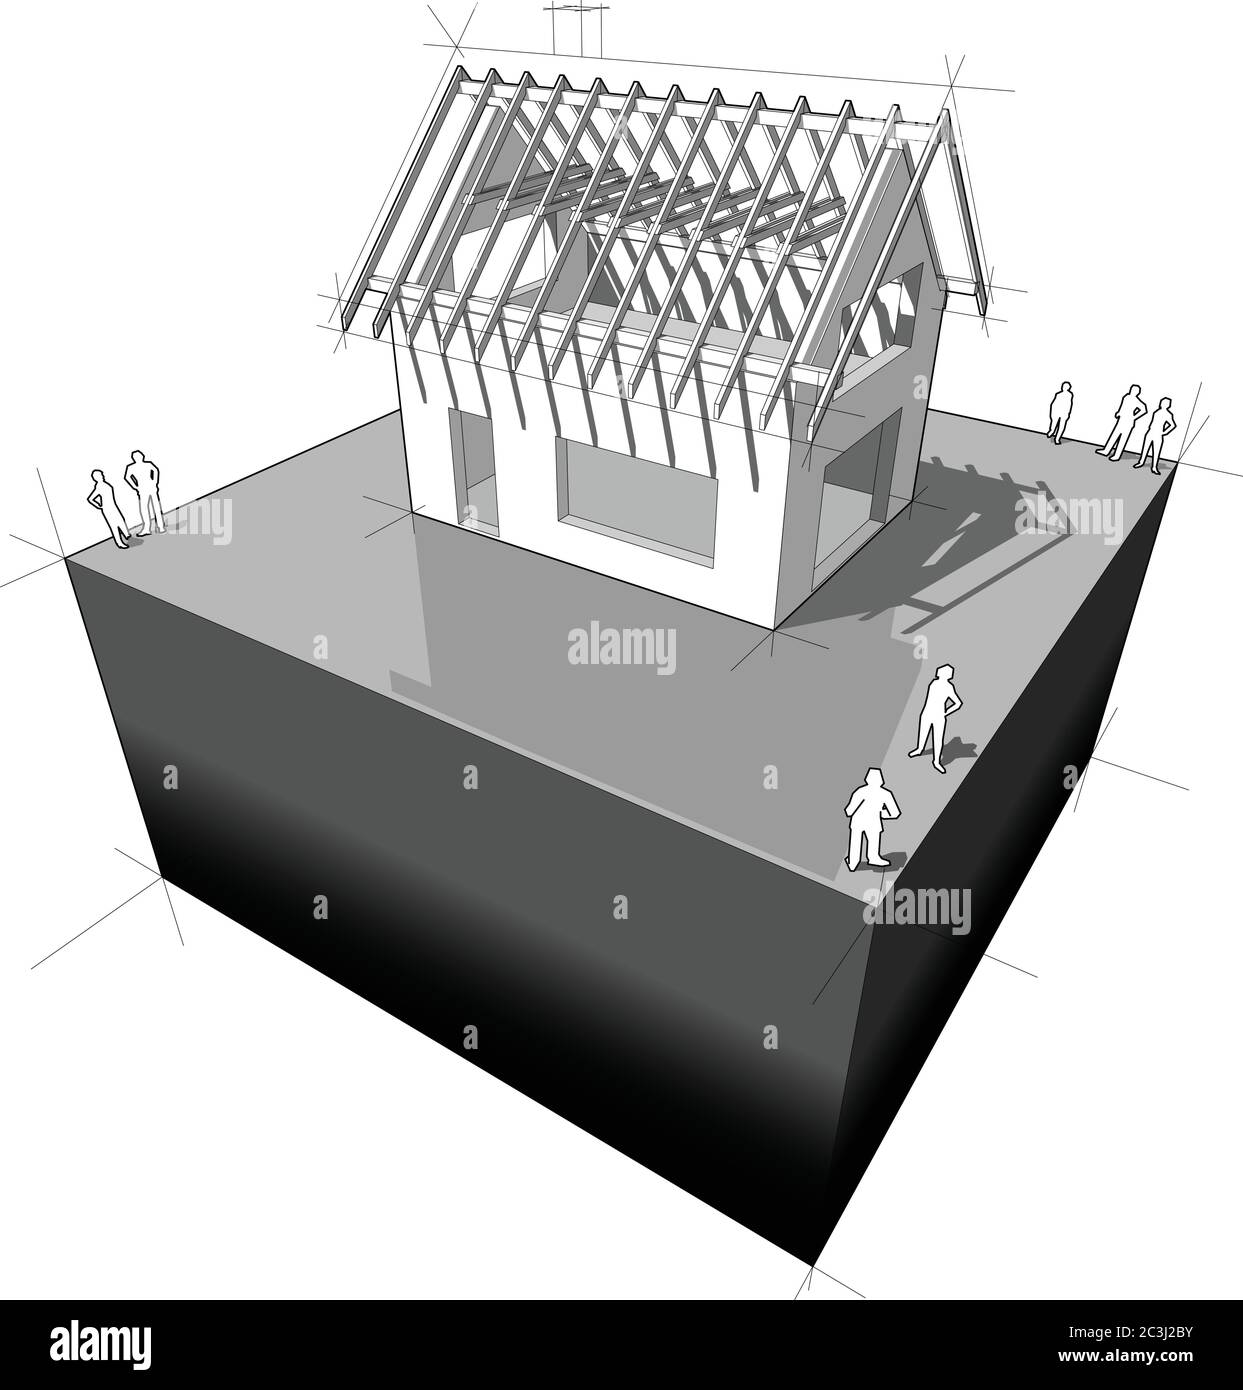 Bau von einfachen Einfamilienhaus mit Holzdach Rahmenkonstruktion Stock Vektor